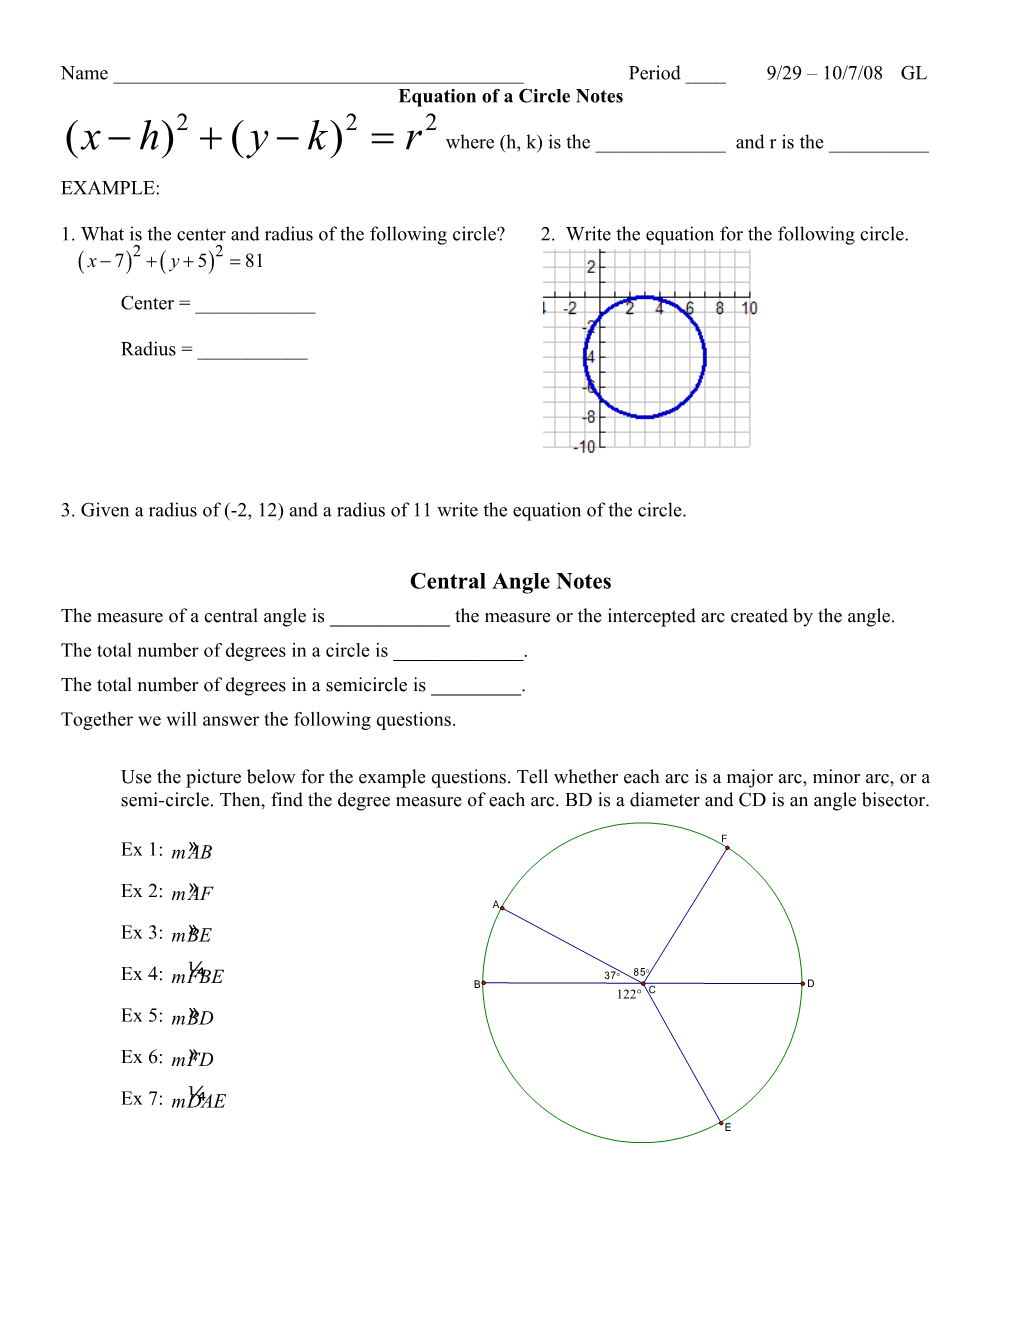 Equation of a Circle Notes